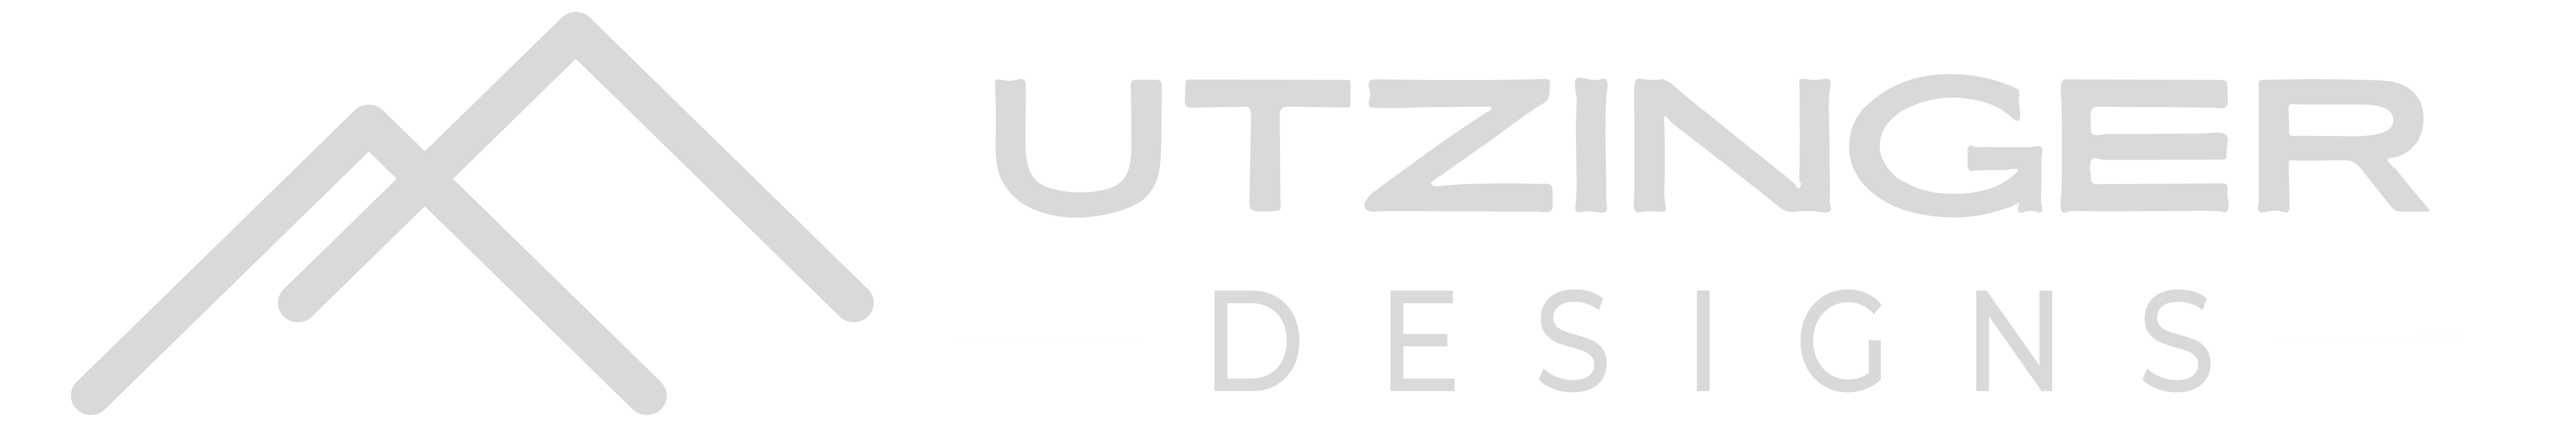 Utzinger Designs Logo Final 04